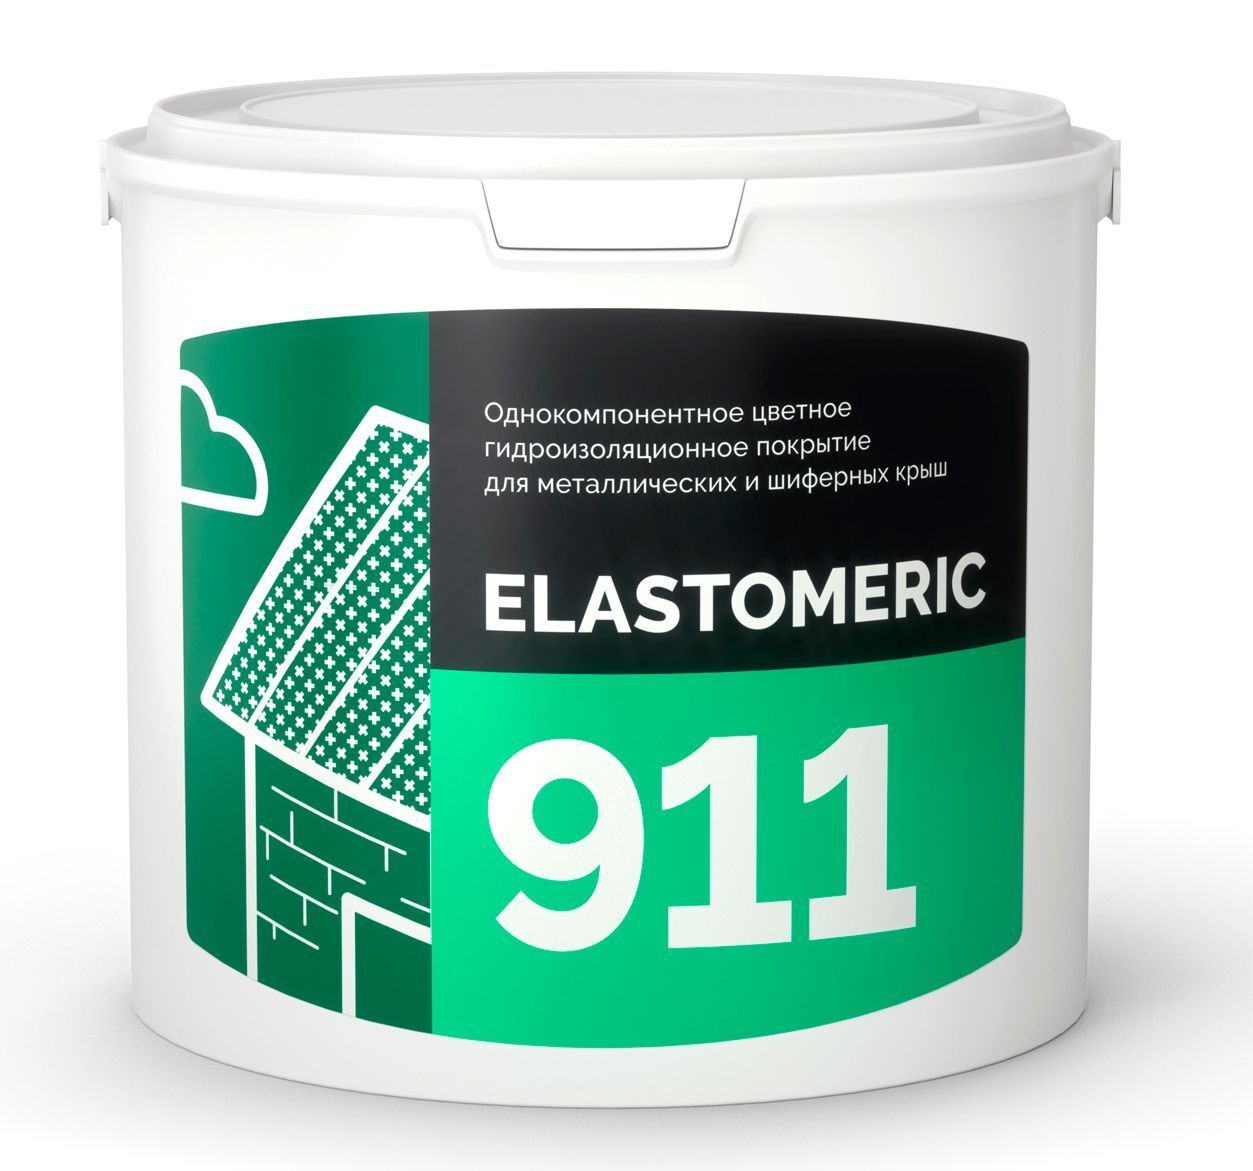 Гидроизоляция металлической и шиферной кровли - ELASTOMERIC 911 3 кг RAL 6002 зеленая листва